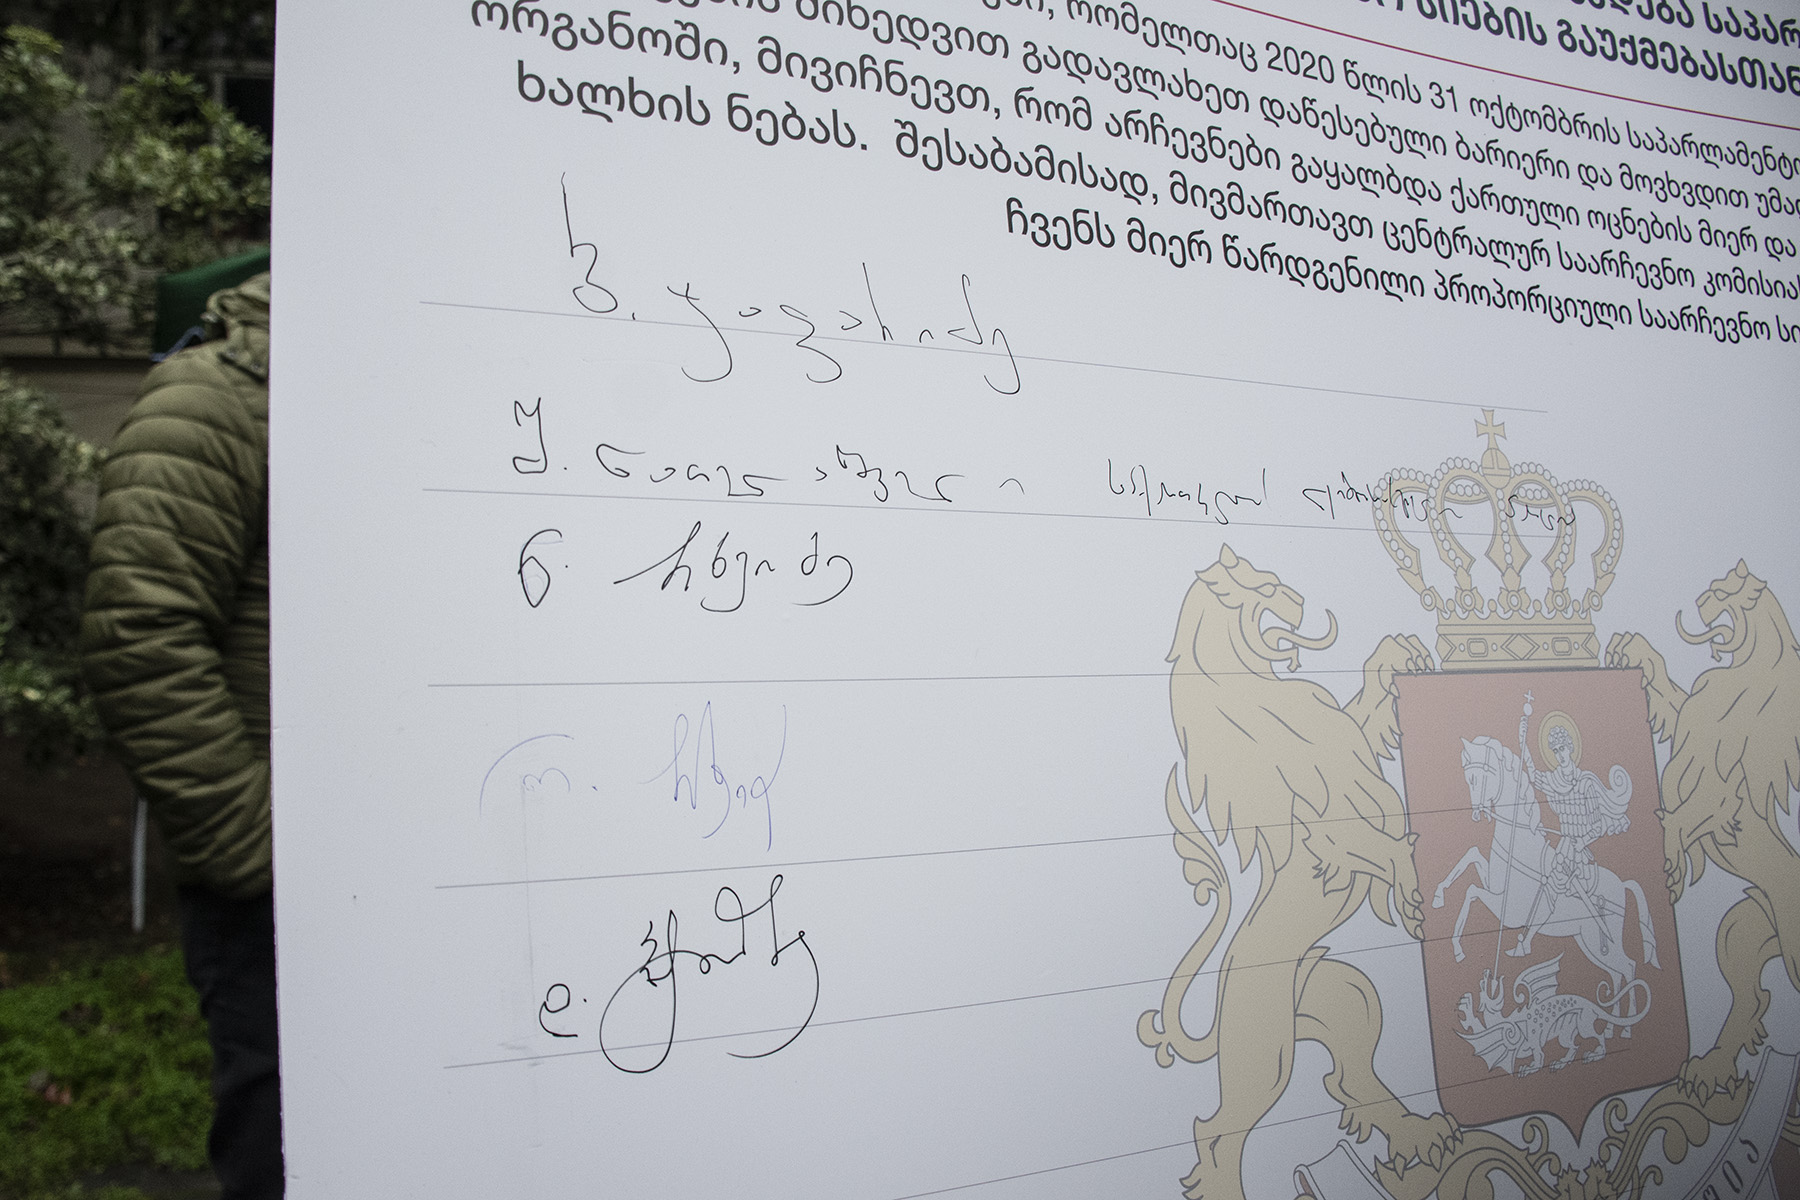 Signatures on the memorandum. Photo: Mariam Nikuradze/OC Media.